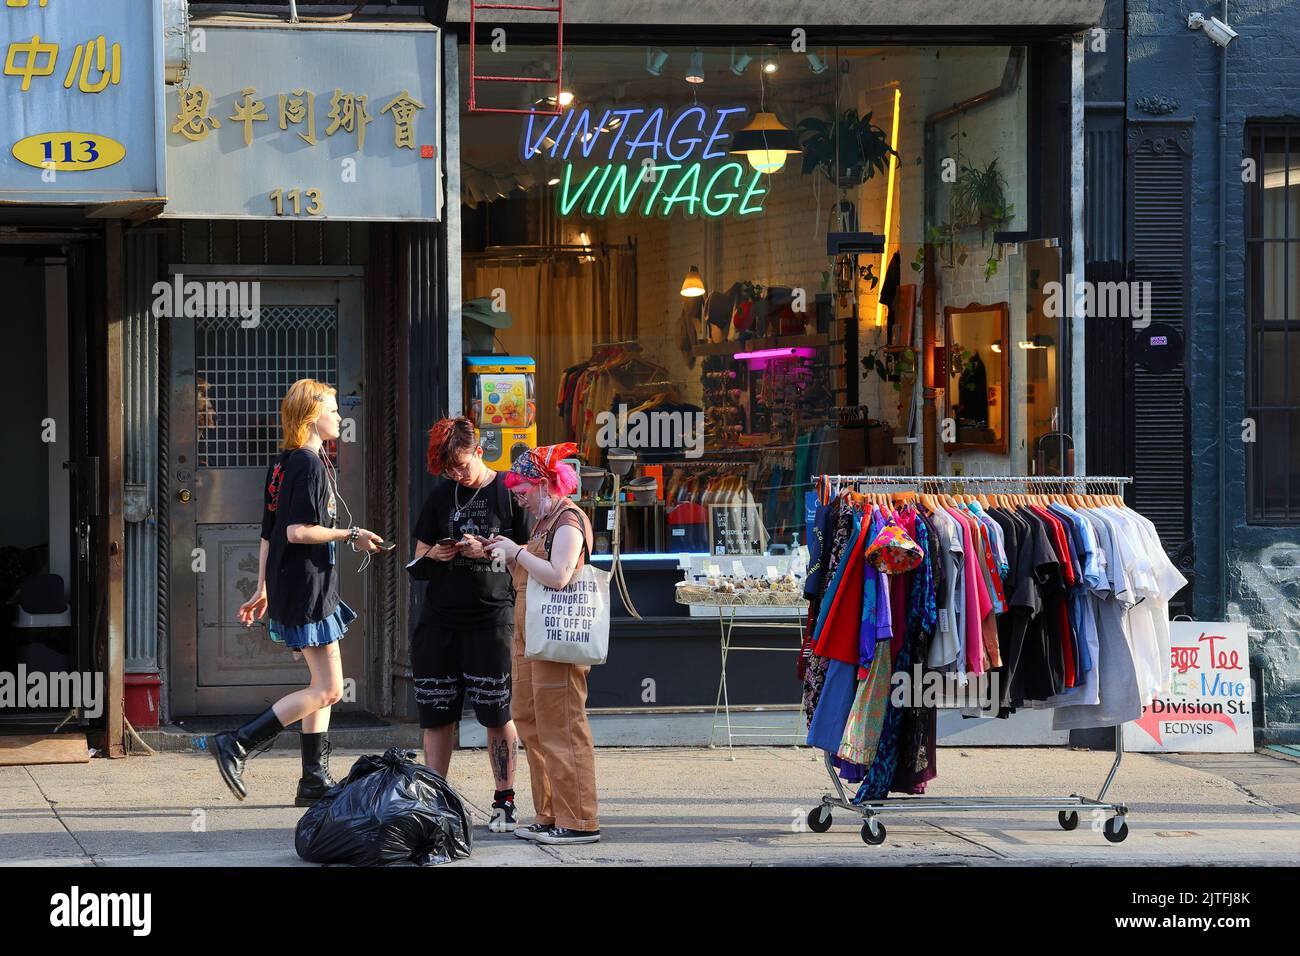 Gen Z visiteurs à Manhattan 'Dimes Square' Chinatown/Lower East Side à l'extérieur d'un magasin de vêtements vintage sur leur téléphone à la recherche d'itinéraires de voyage. Banque D'Images